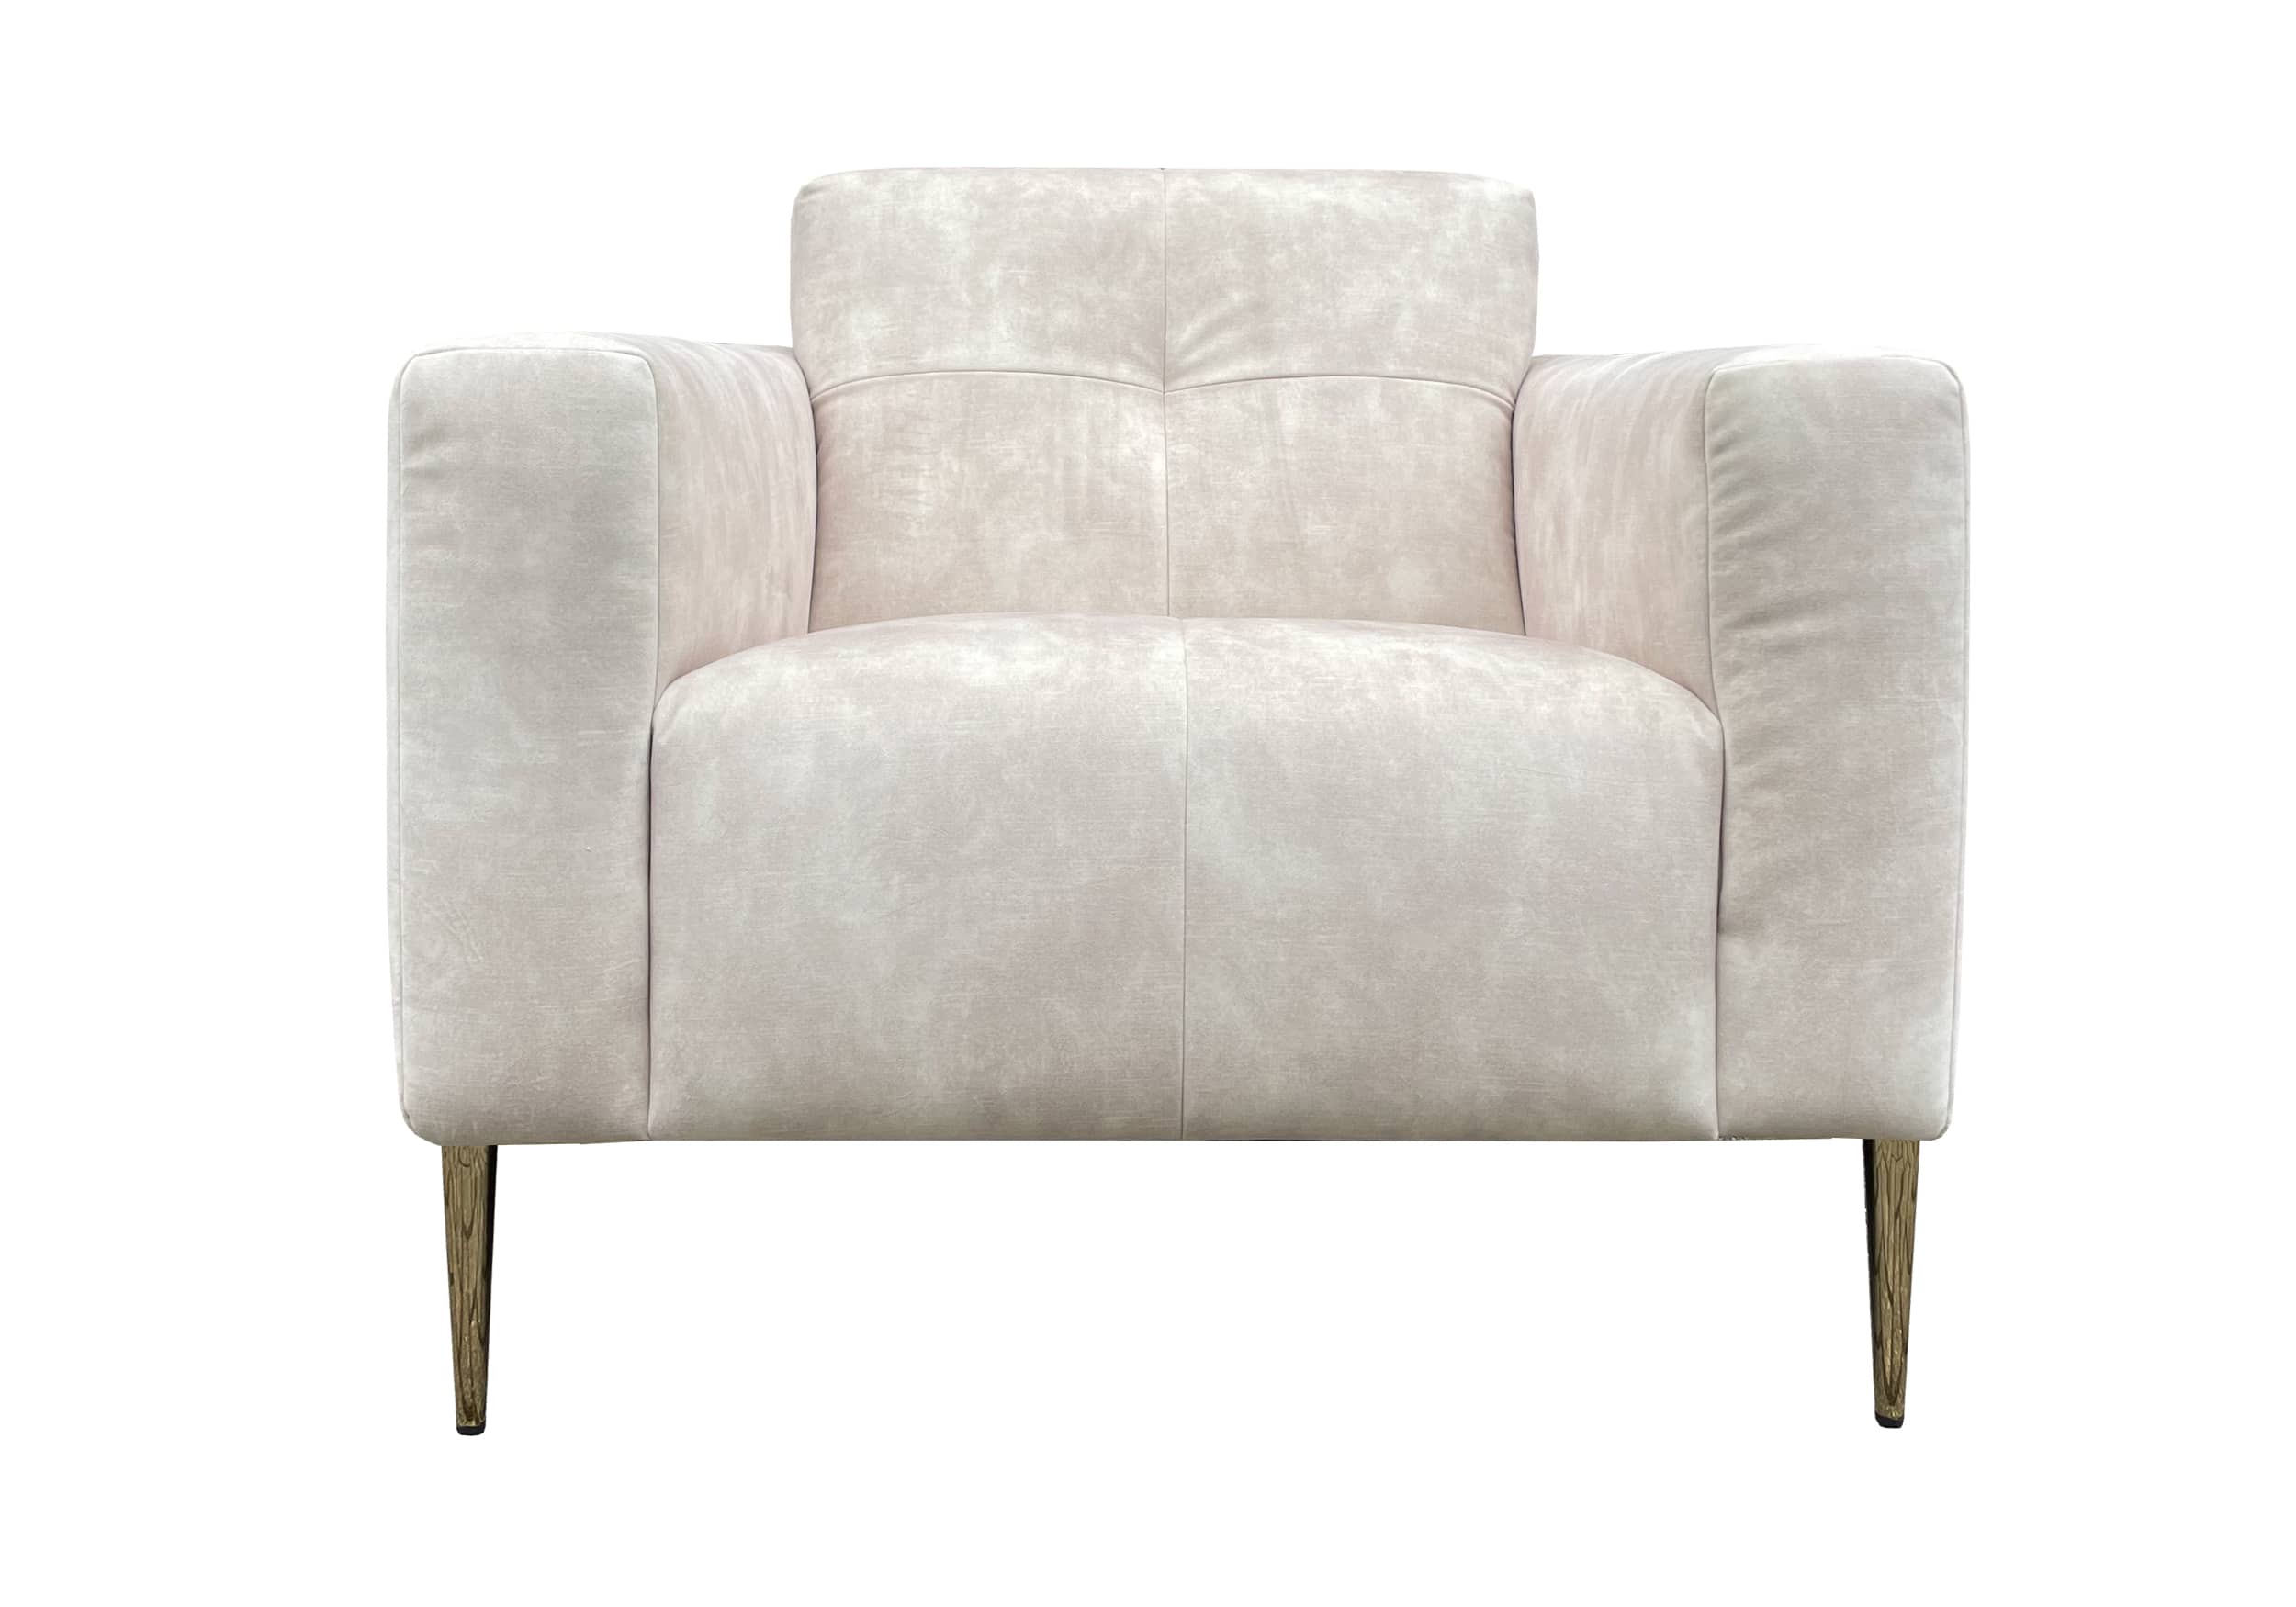 Moderne fauteuil velvet Mila in witte velvet stof op gouden poten